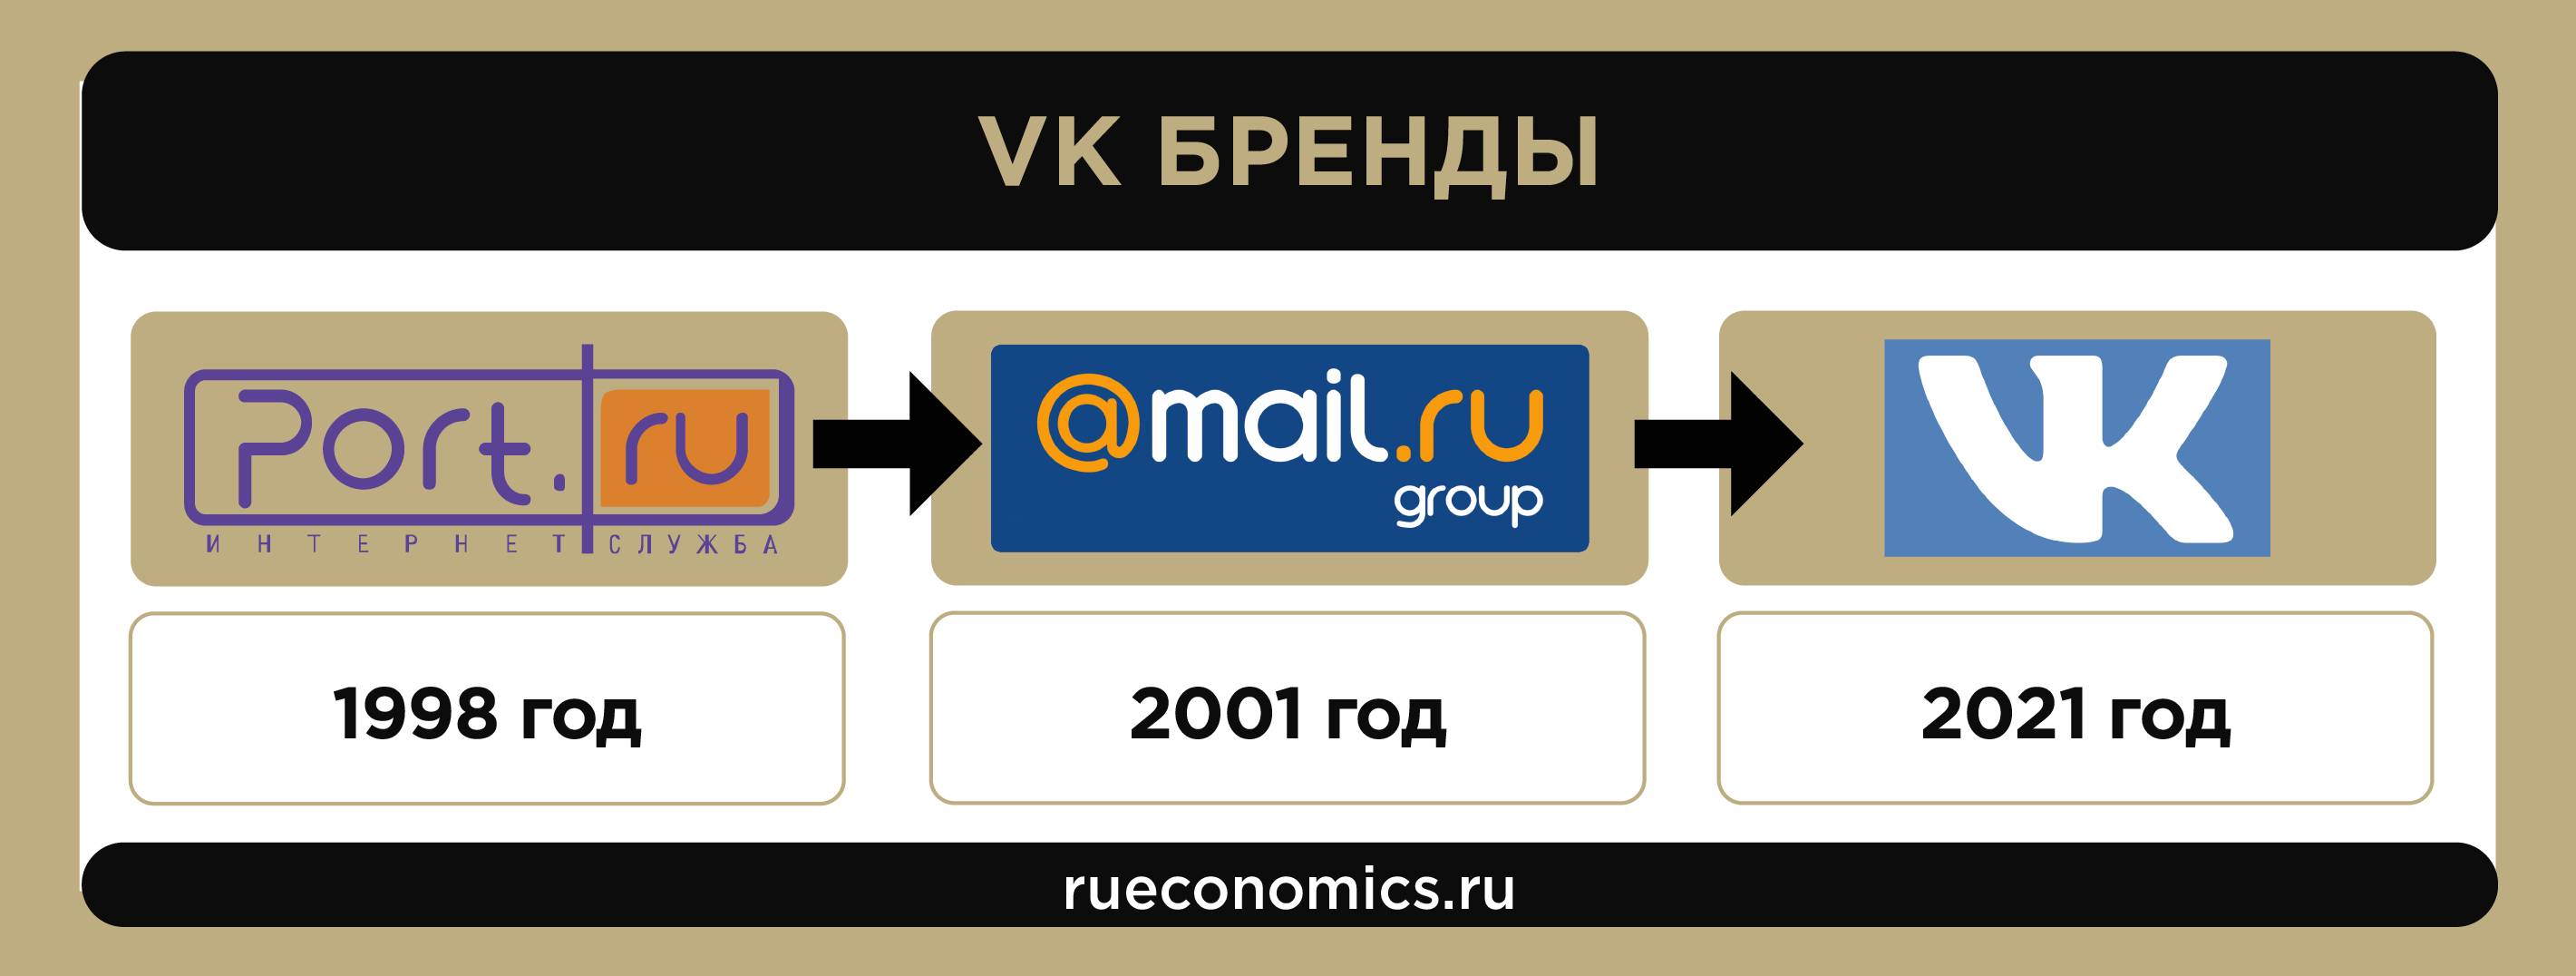 Le chemin du groupe Mail.ru à VK: comment le service postal est devenu une multinationale